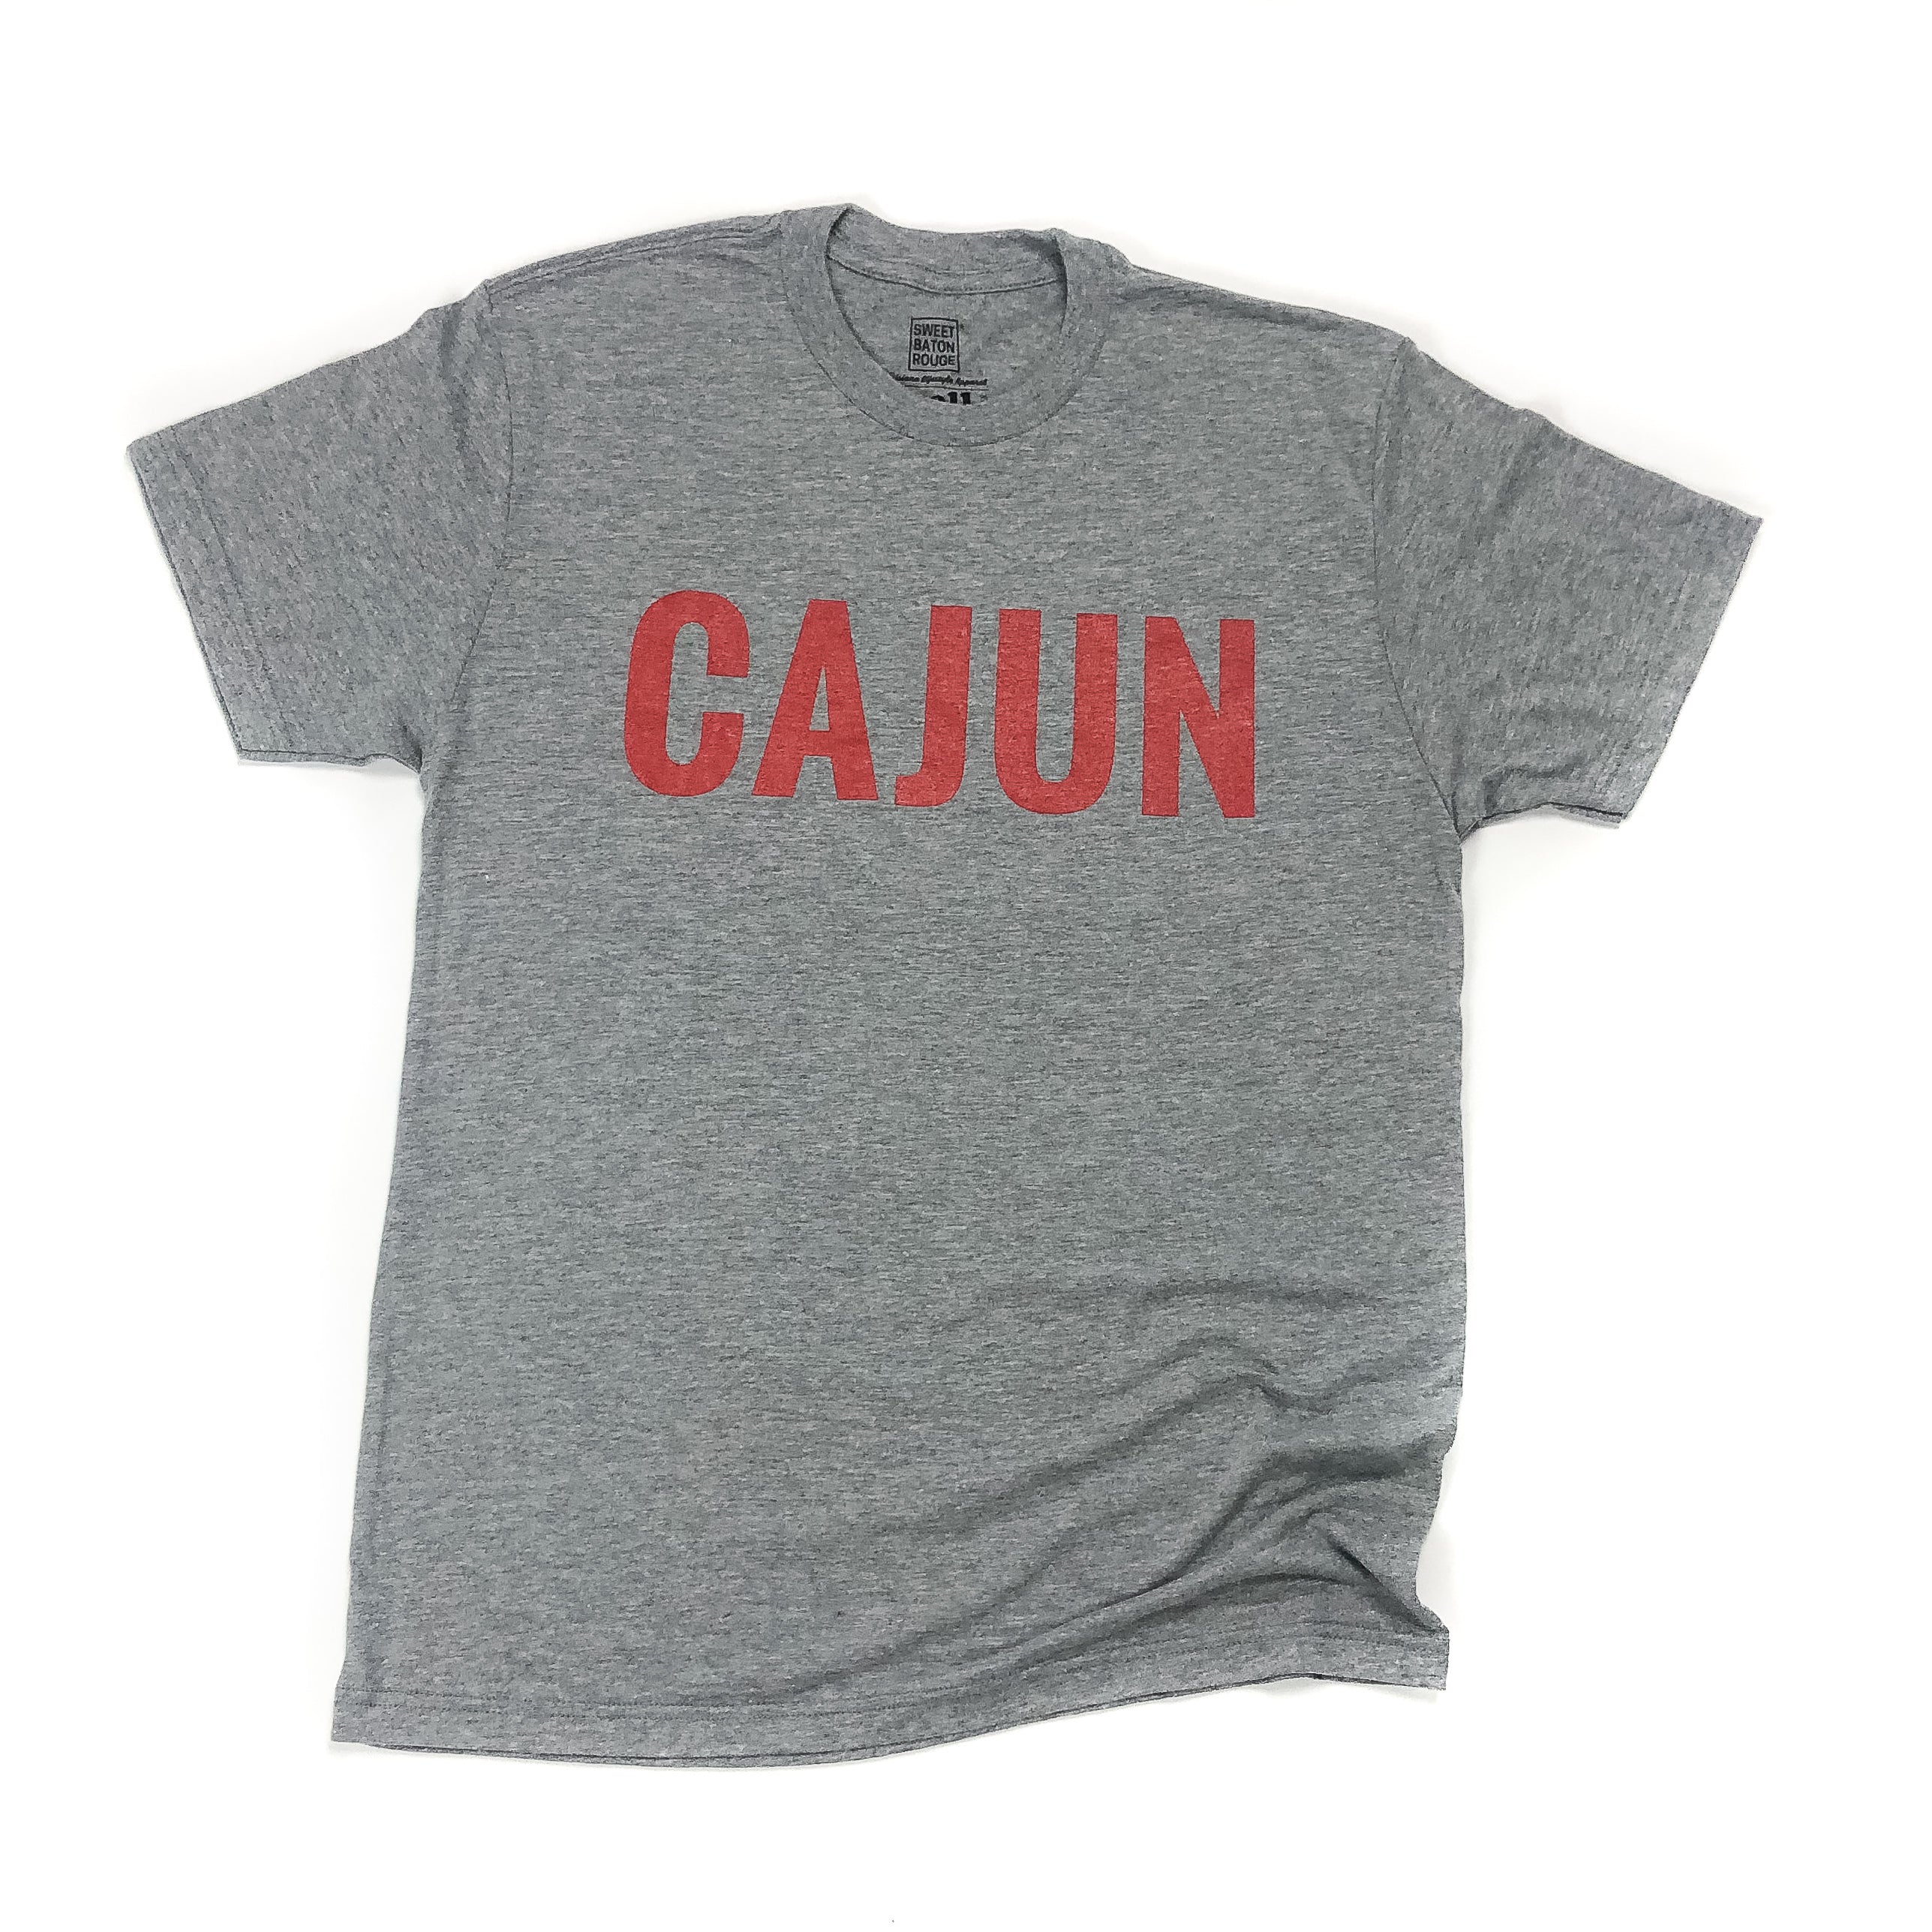 Cajun T-shirt